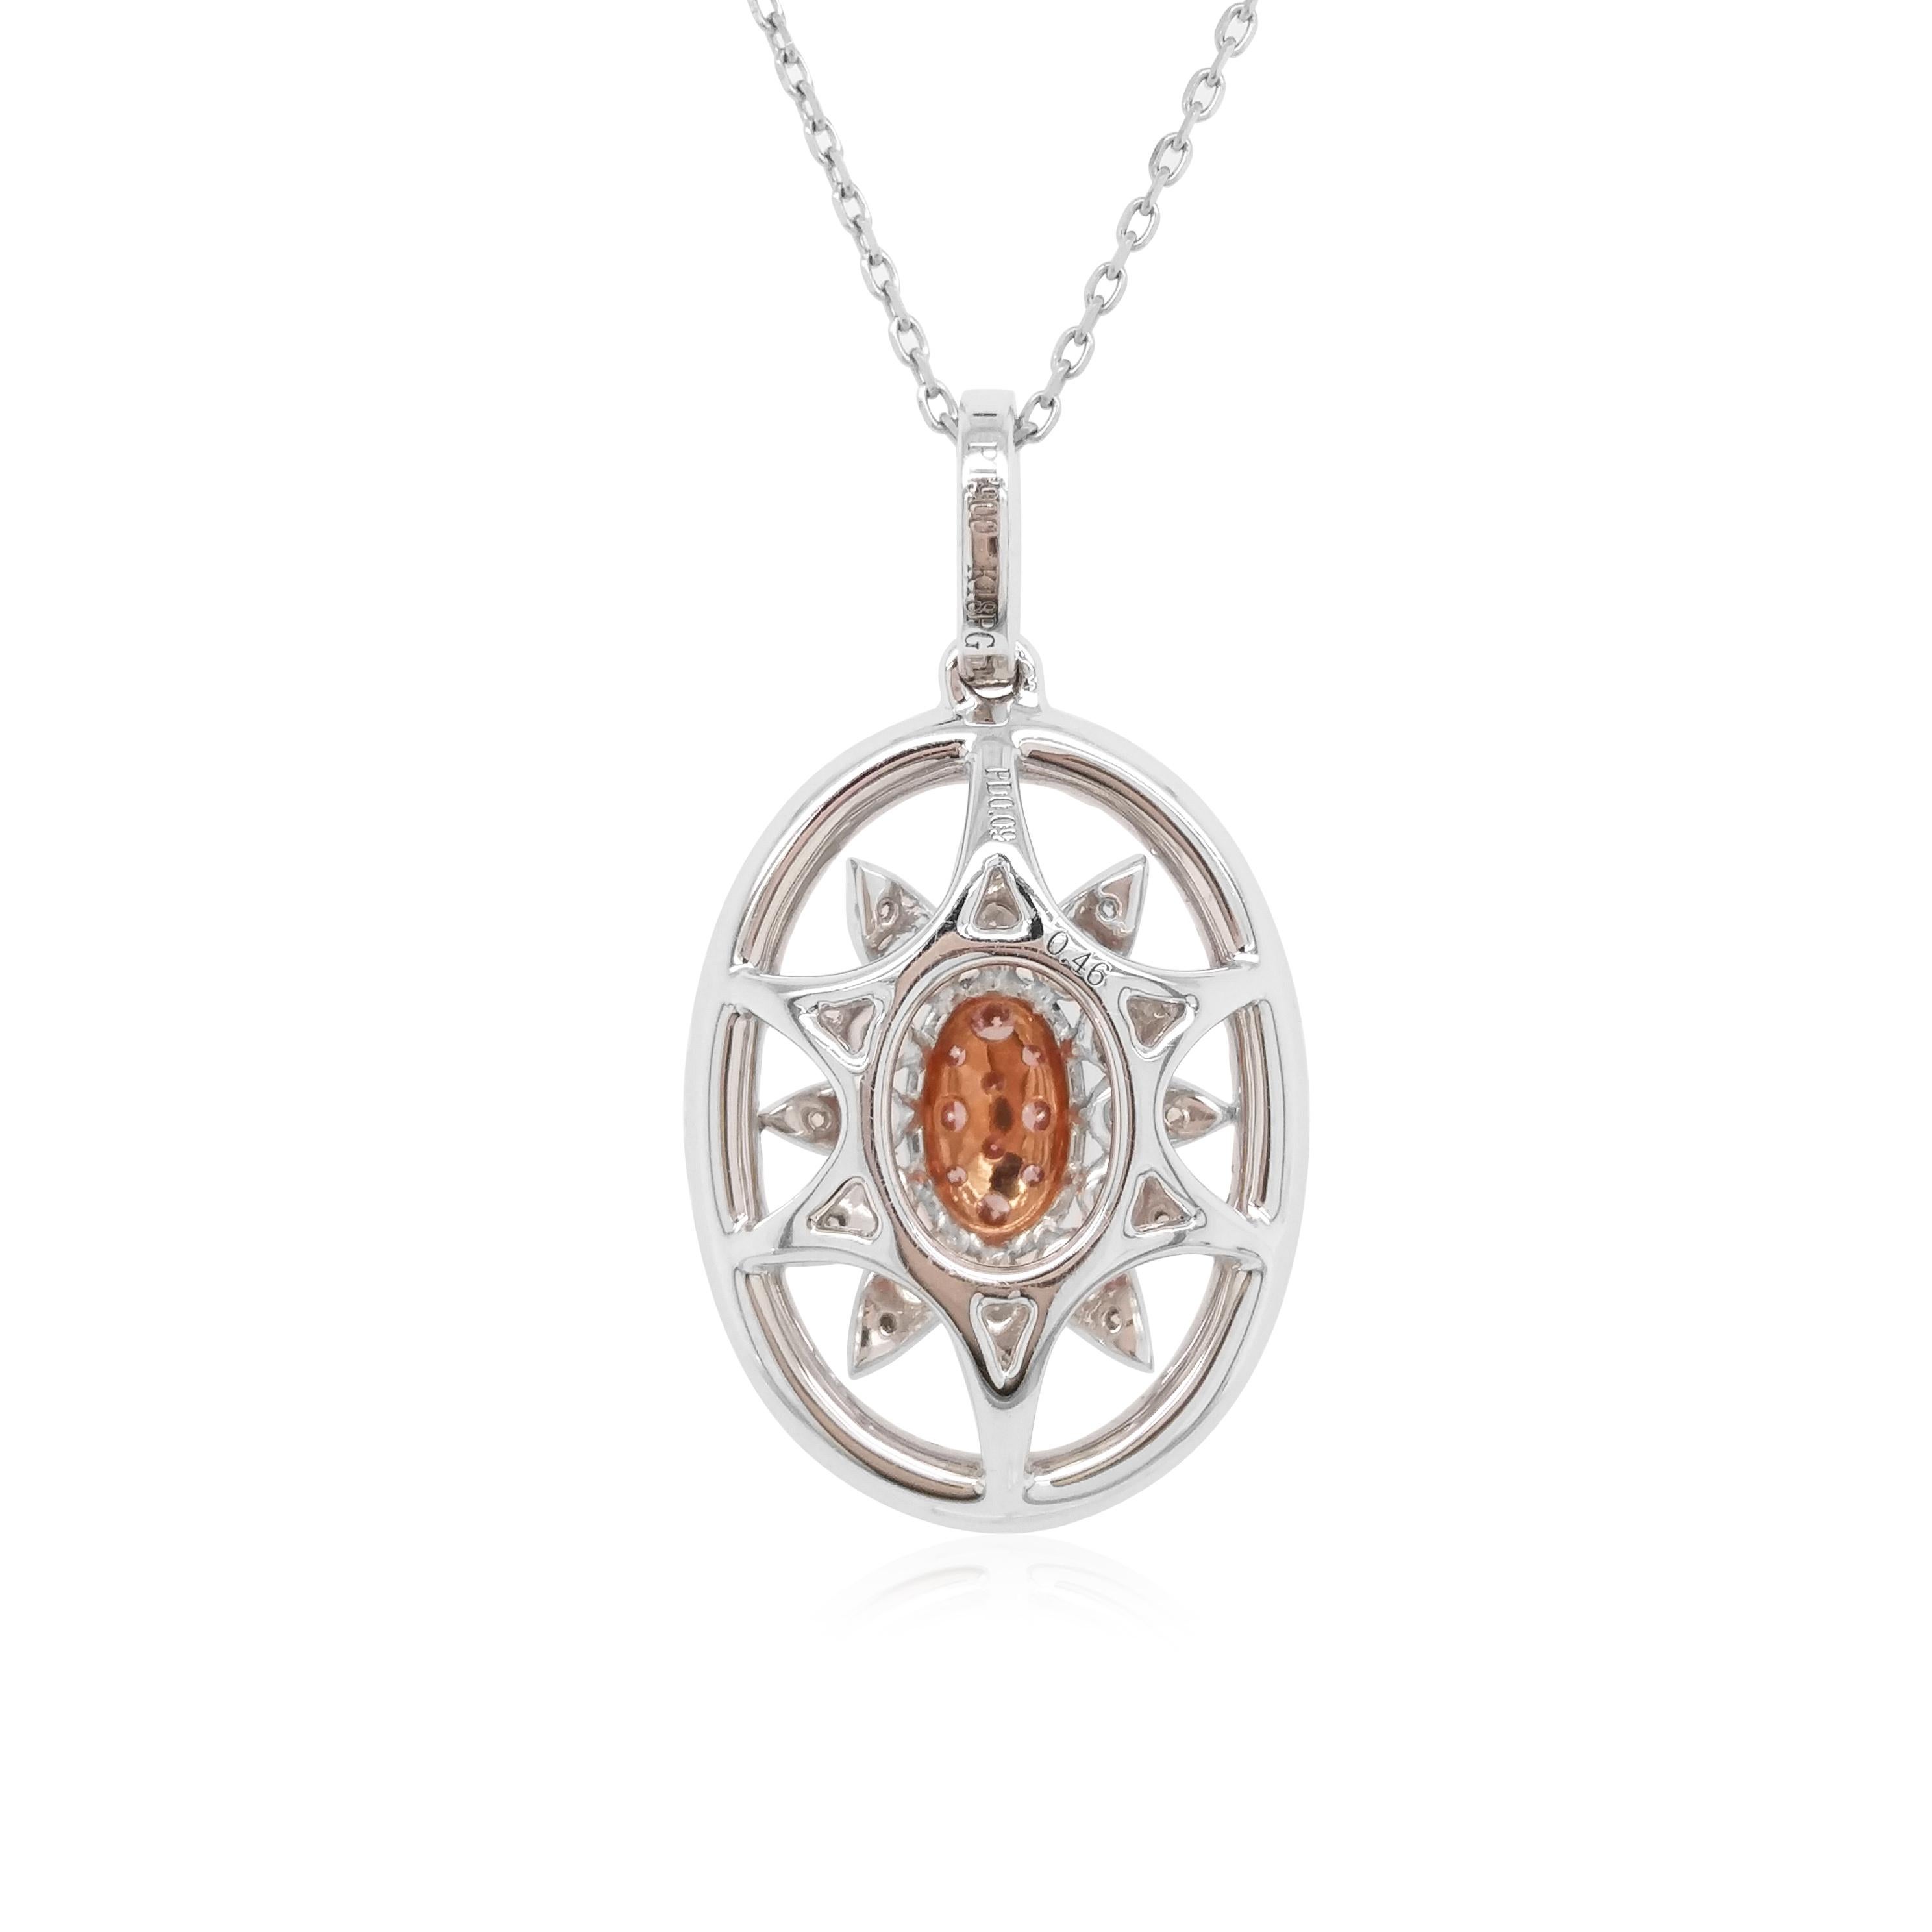 Ce pendentif unique présente en son centre de remarquables diamants roses Argyle naturels, entourés d'un motif audacieux de diamants blancs étincelants. Pièce parfaite pour passer du jour à la nuit, ce pendentif rehaussera n'importe quelle tenue,